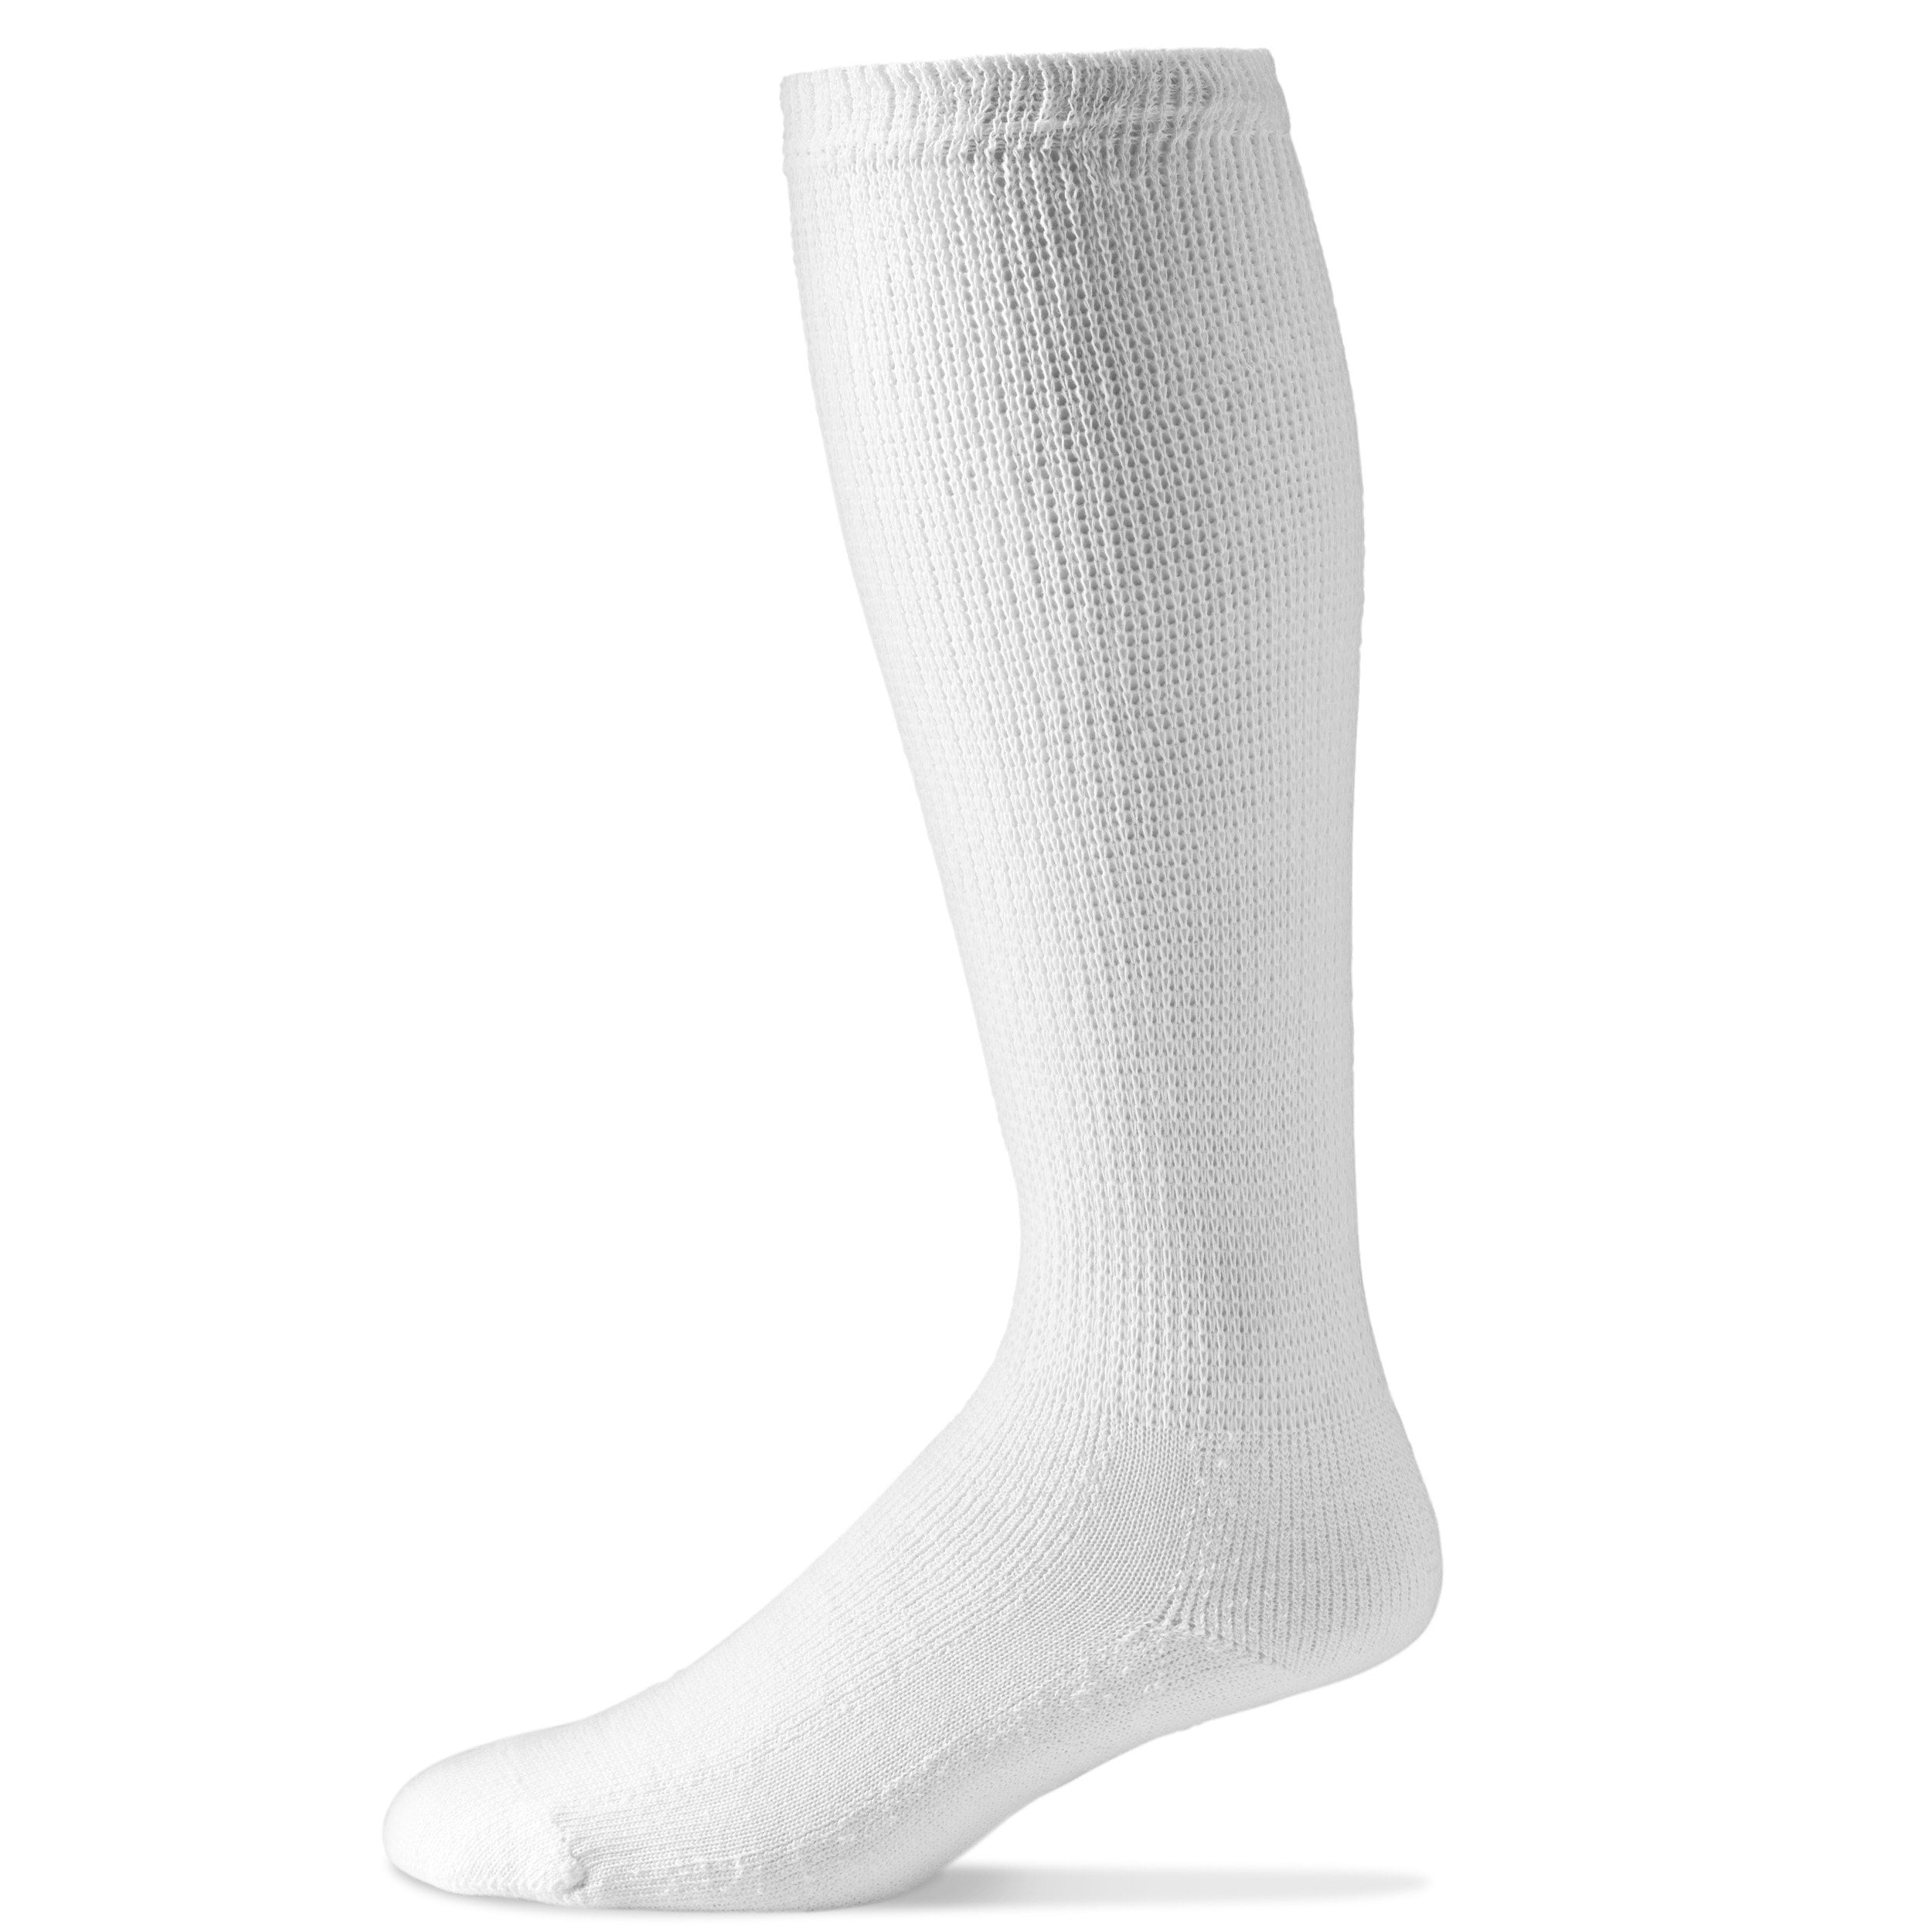 Physicians' Choice Diabetic Socks - Calcetines para diabéticos para hombre,  calcetines por encima de la pantorrilla - 10-13, Gris